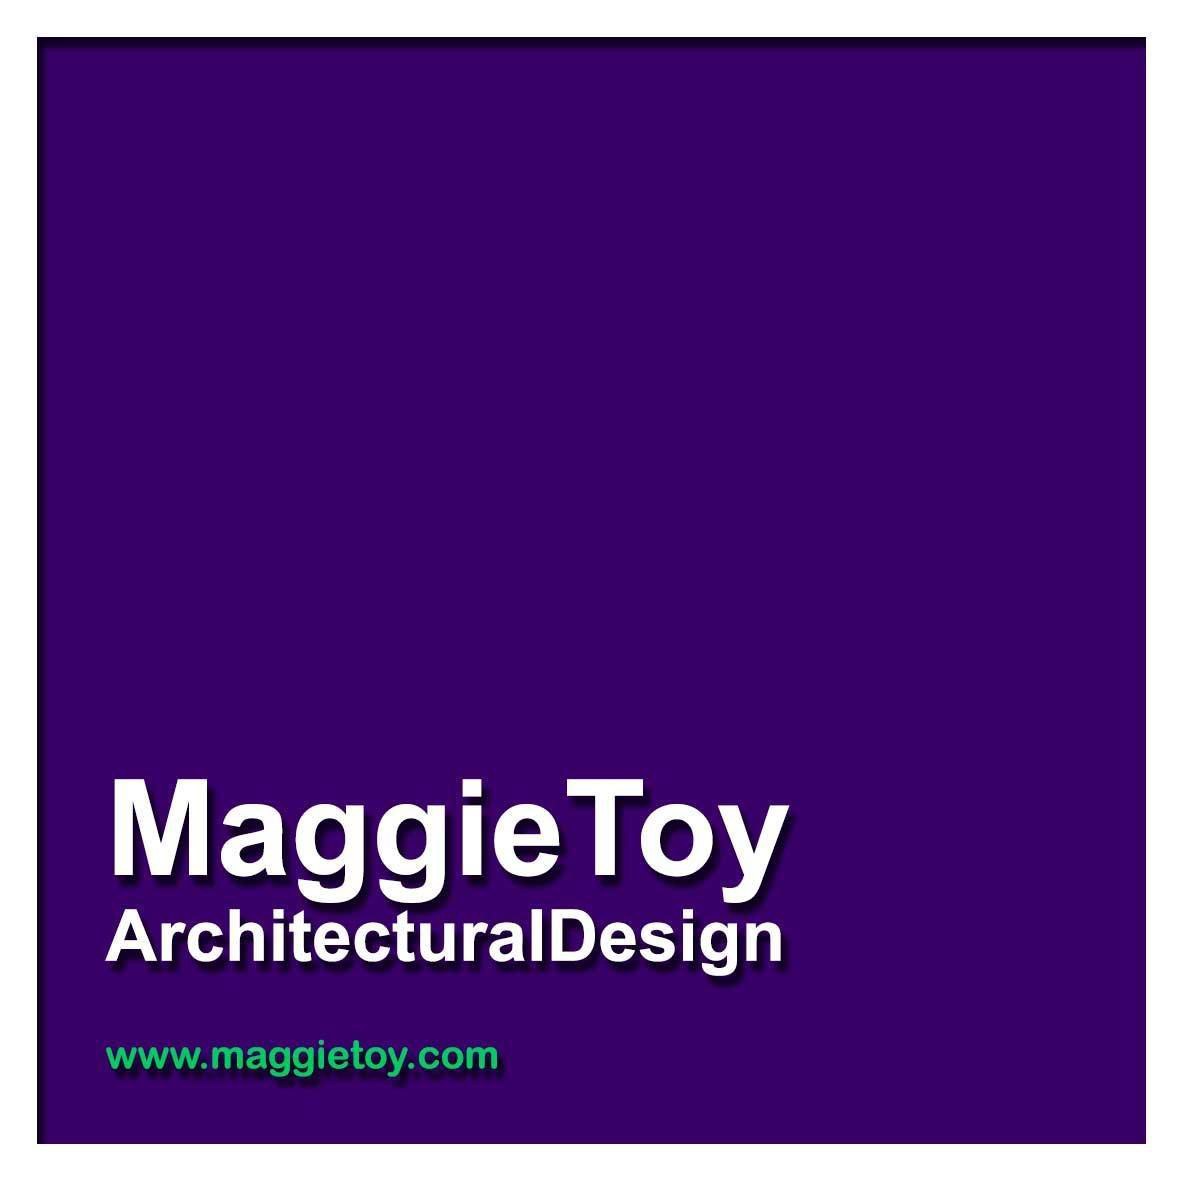 Maggie Toy Architectural Design